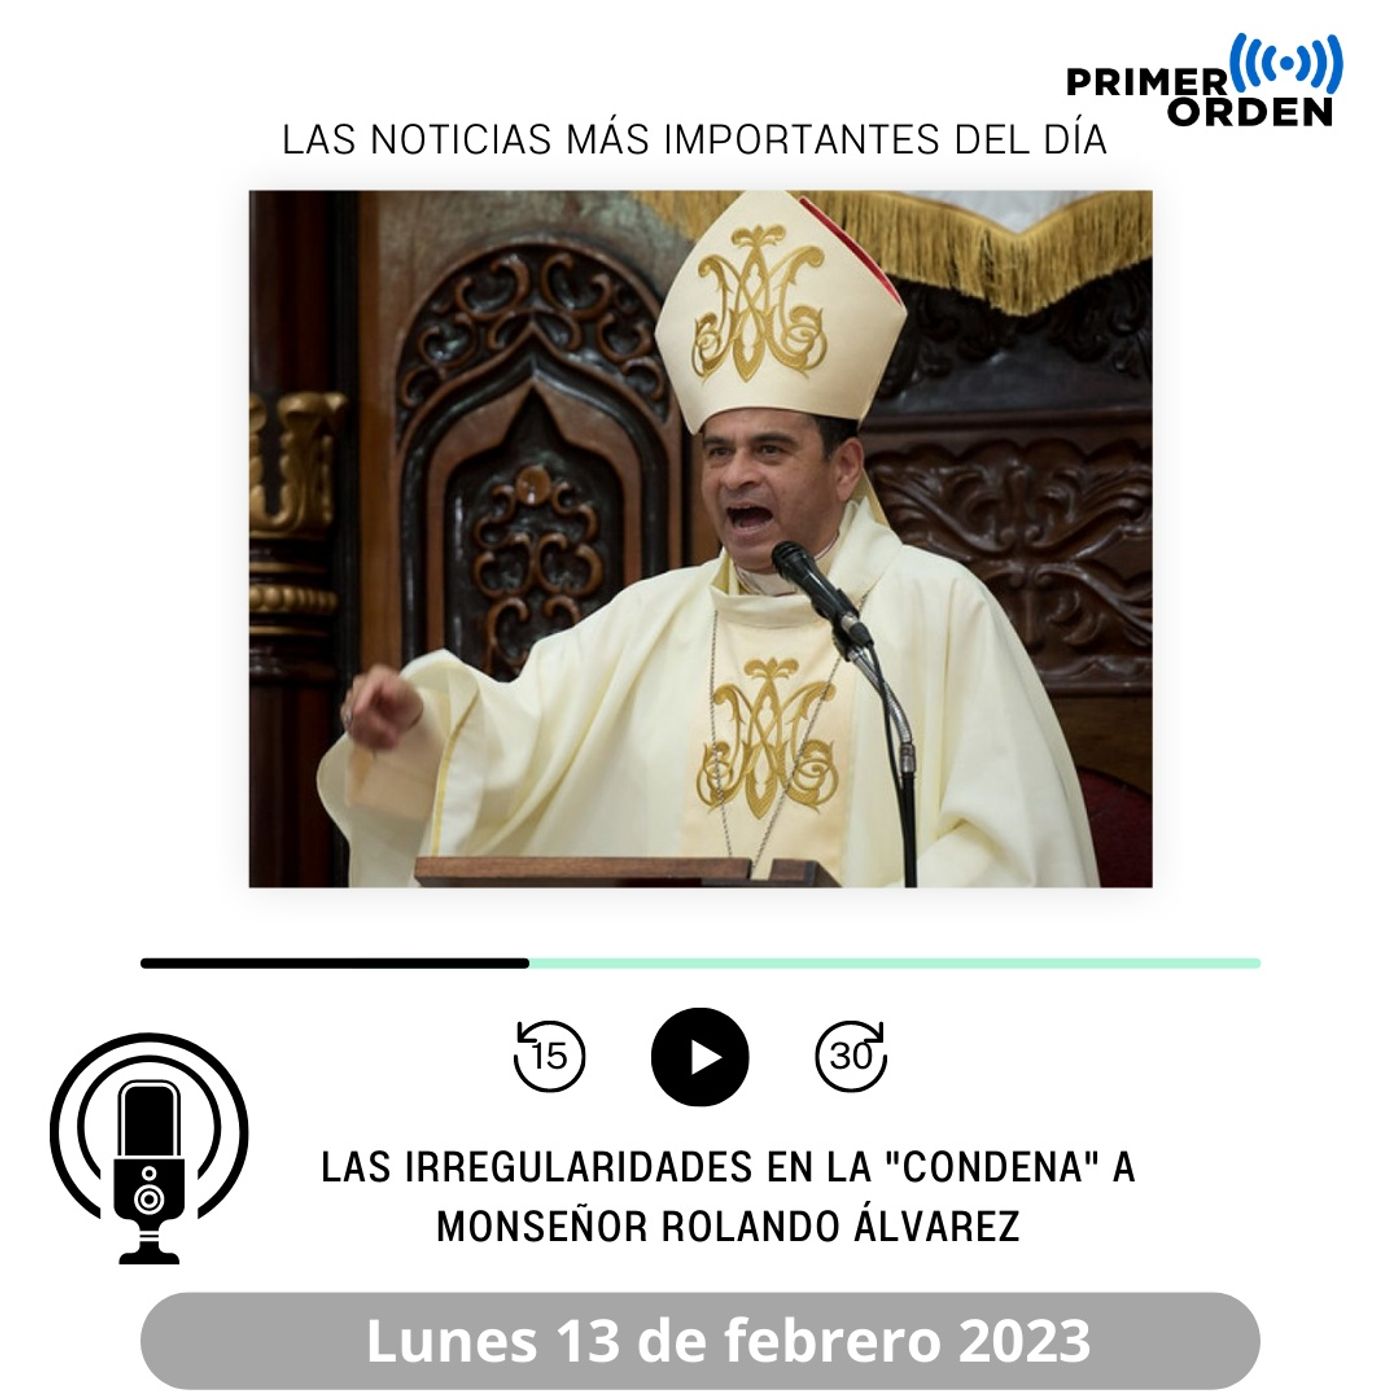 Las irregularidades en la "condena" a Monseñor Rolando Álvarez